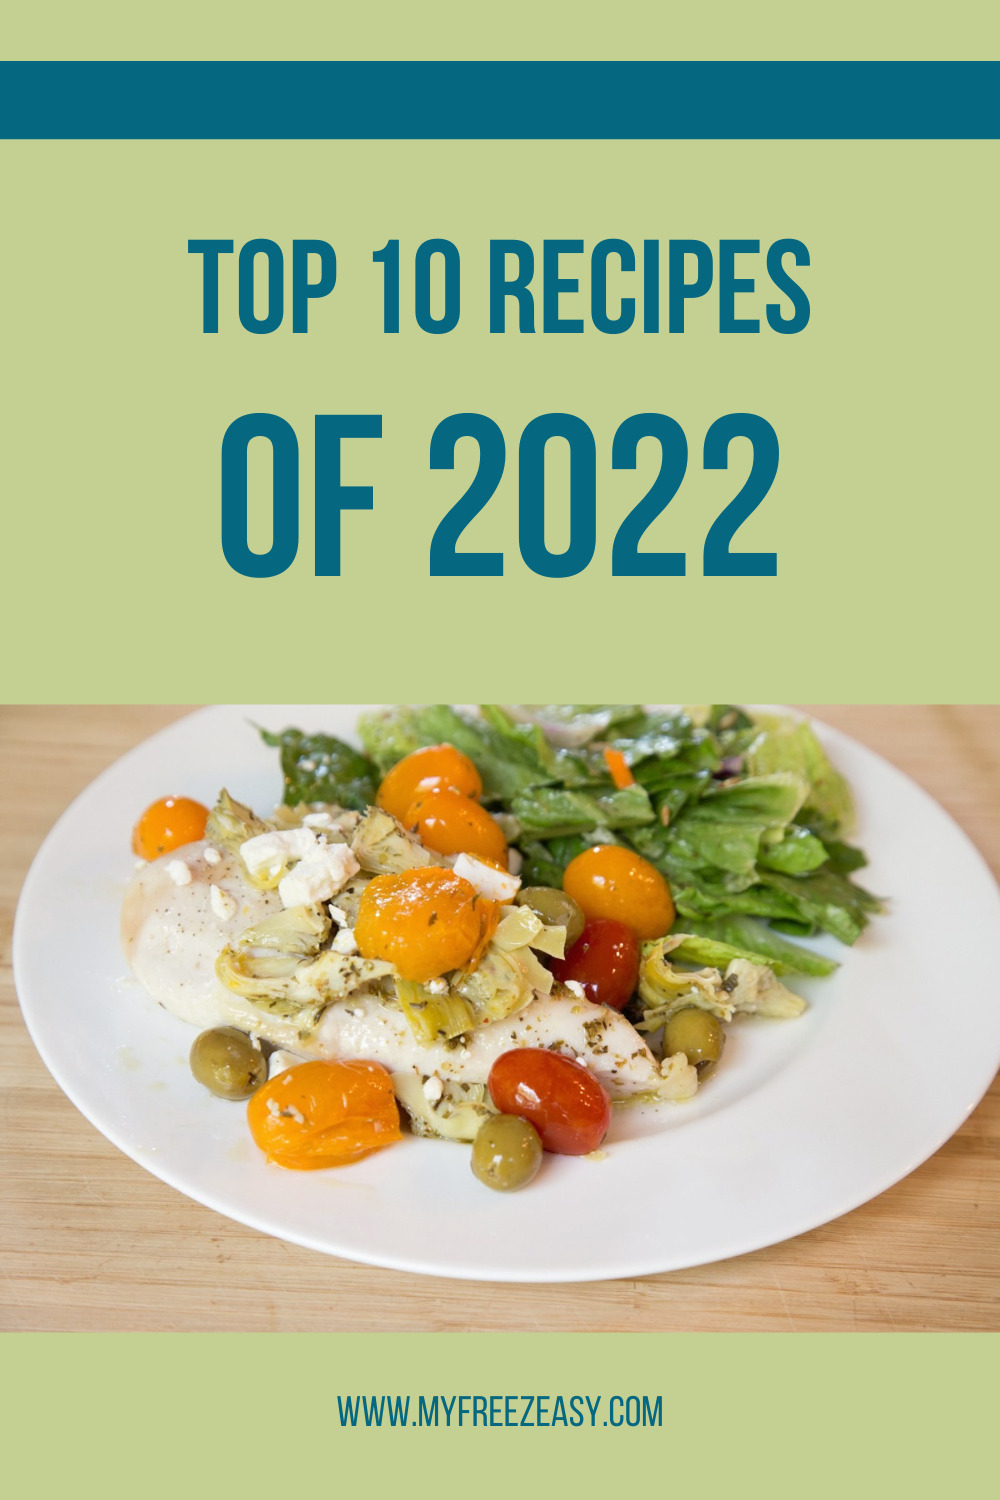 Top 10 Recipes 2022 by myfreezeeasy